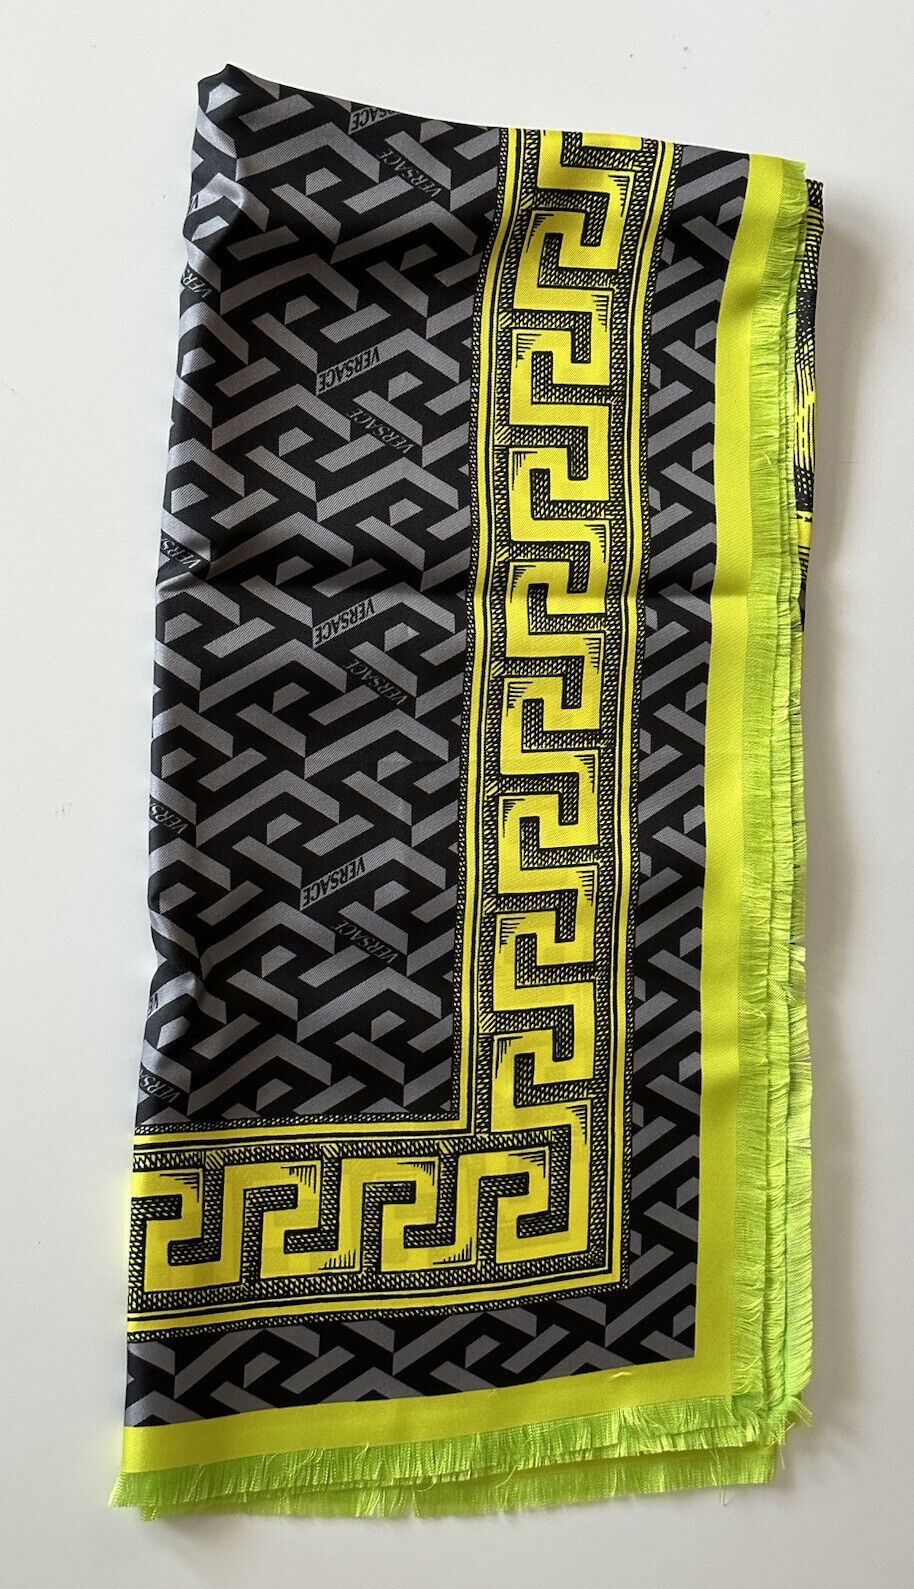 Новый шарф Versace из шелкового твила с логотипом «греческий ключ» размером 35,5 x 35,5 дюйма IT 1001600 за 875 долларов США.